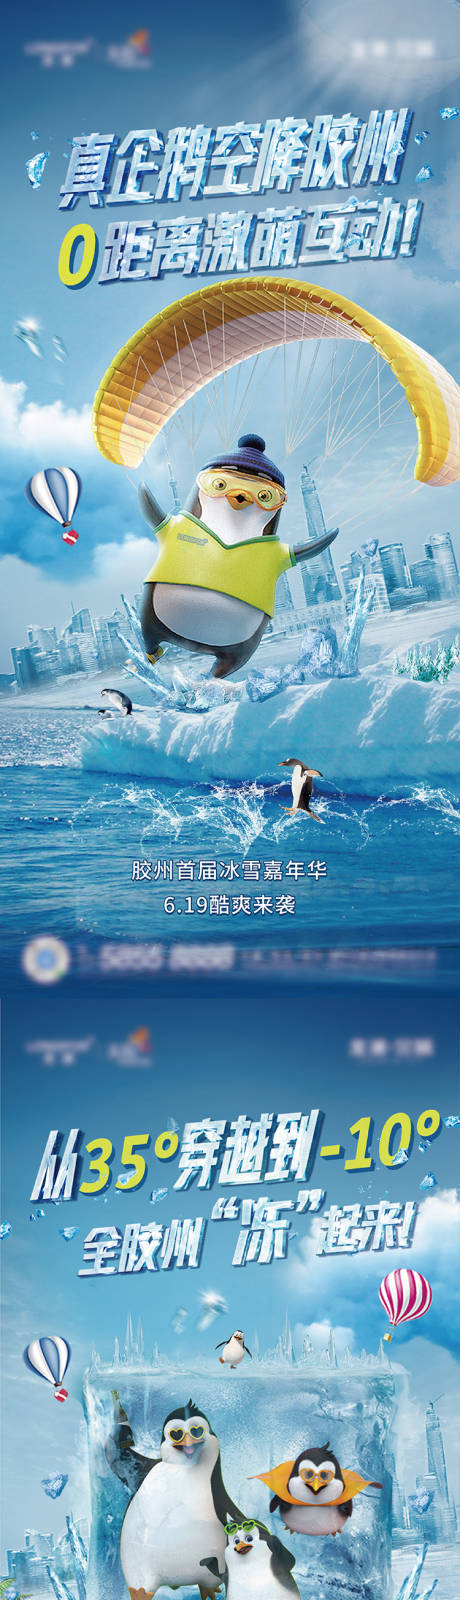 企鹅嘉年华系列海报